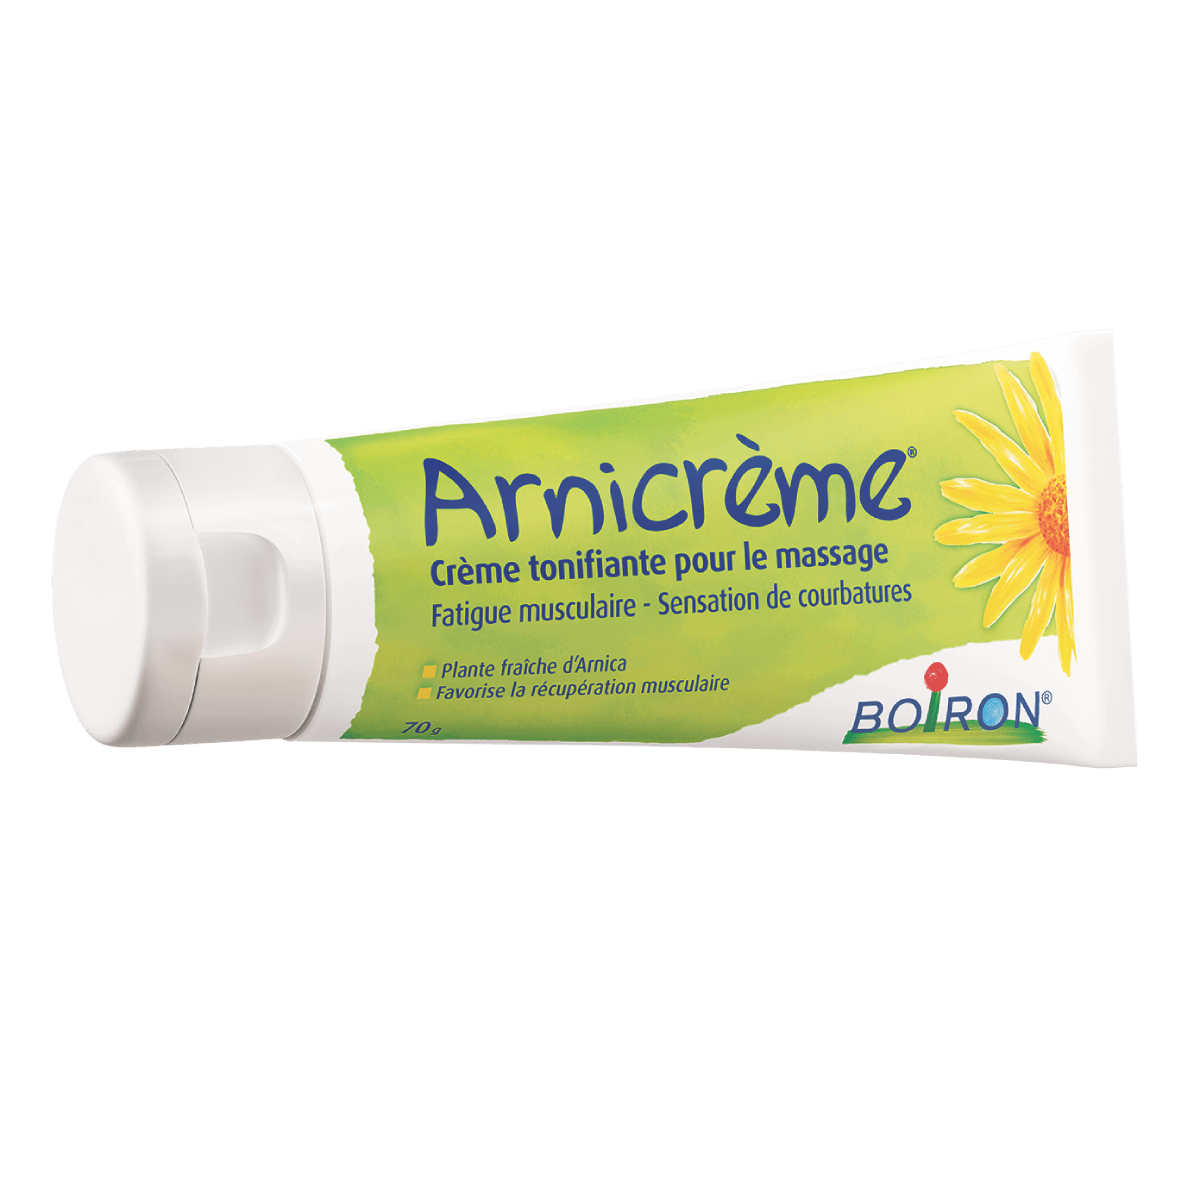 Arnicrème® crème tonifiante pour le massage : achat cosmétiques